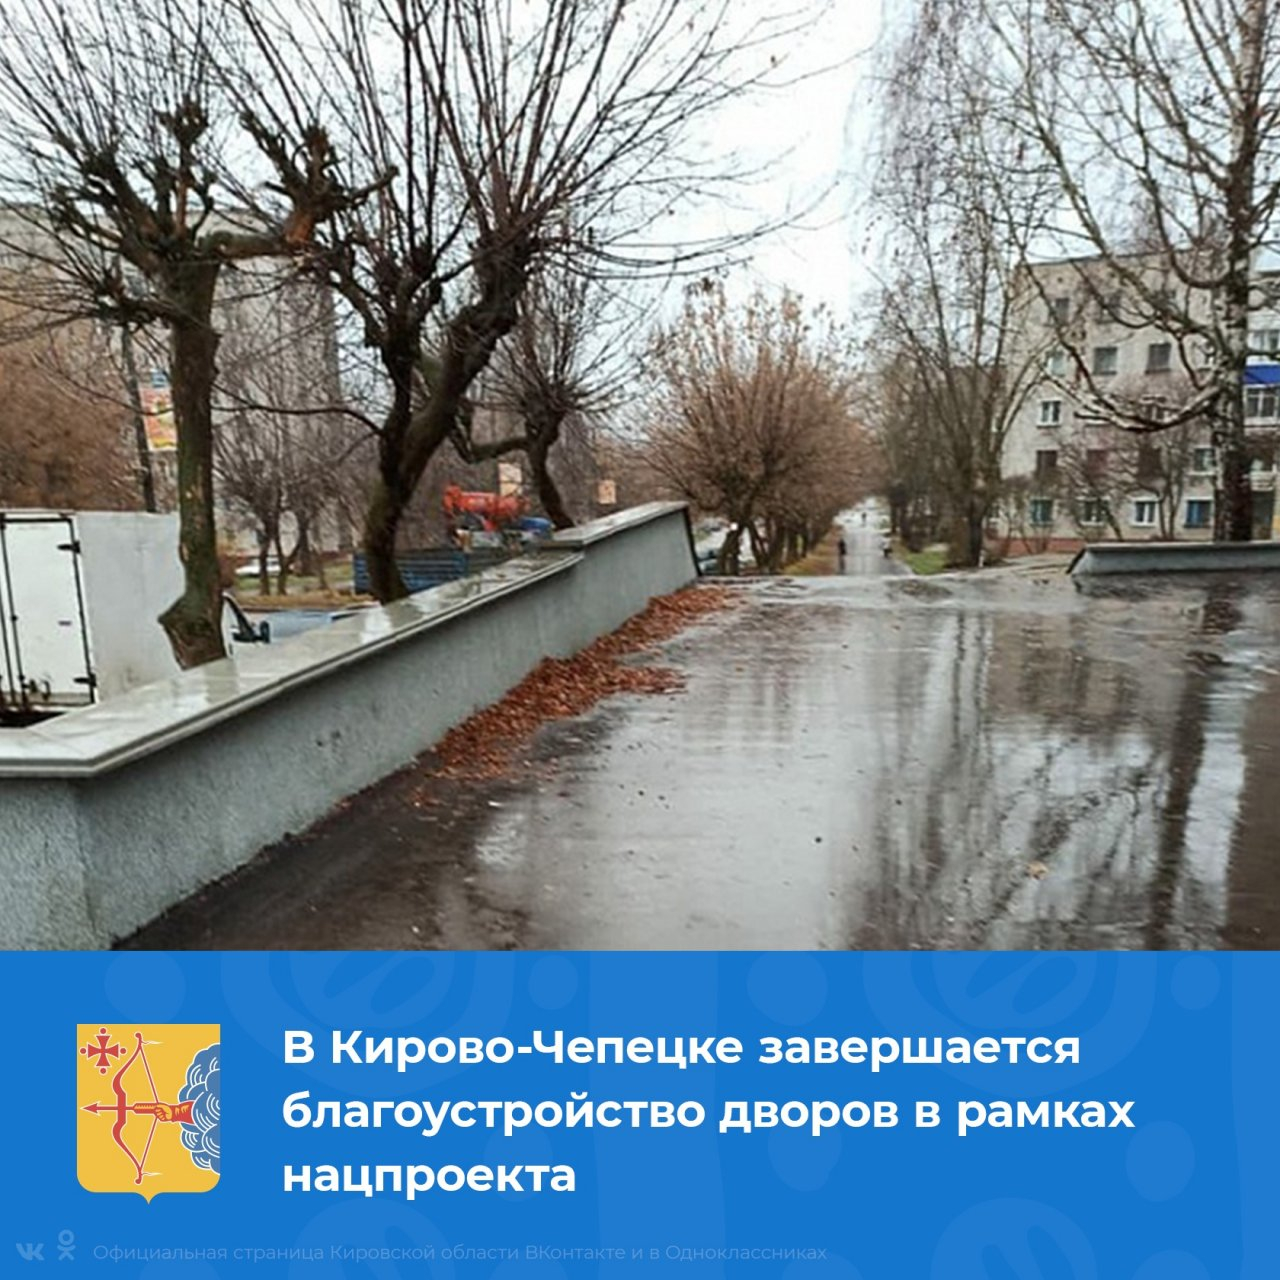 В пяти дворах Кирово-Чепецка завершены ремонтные работы